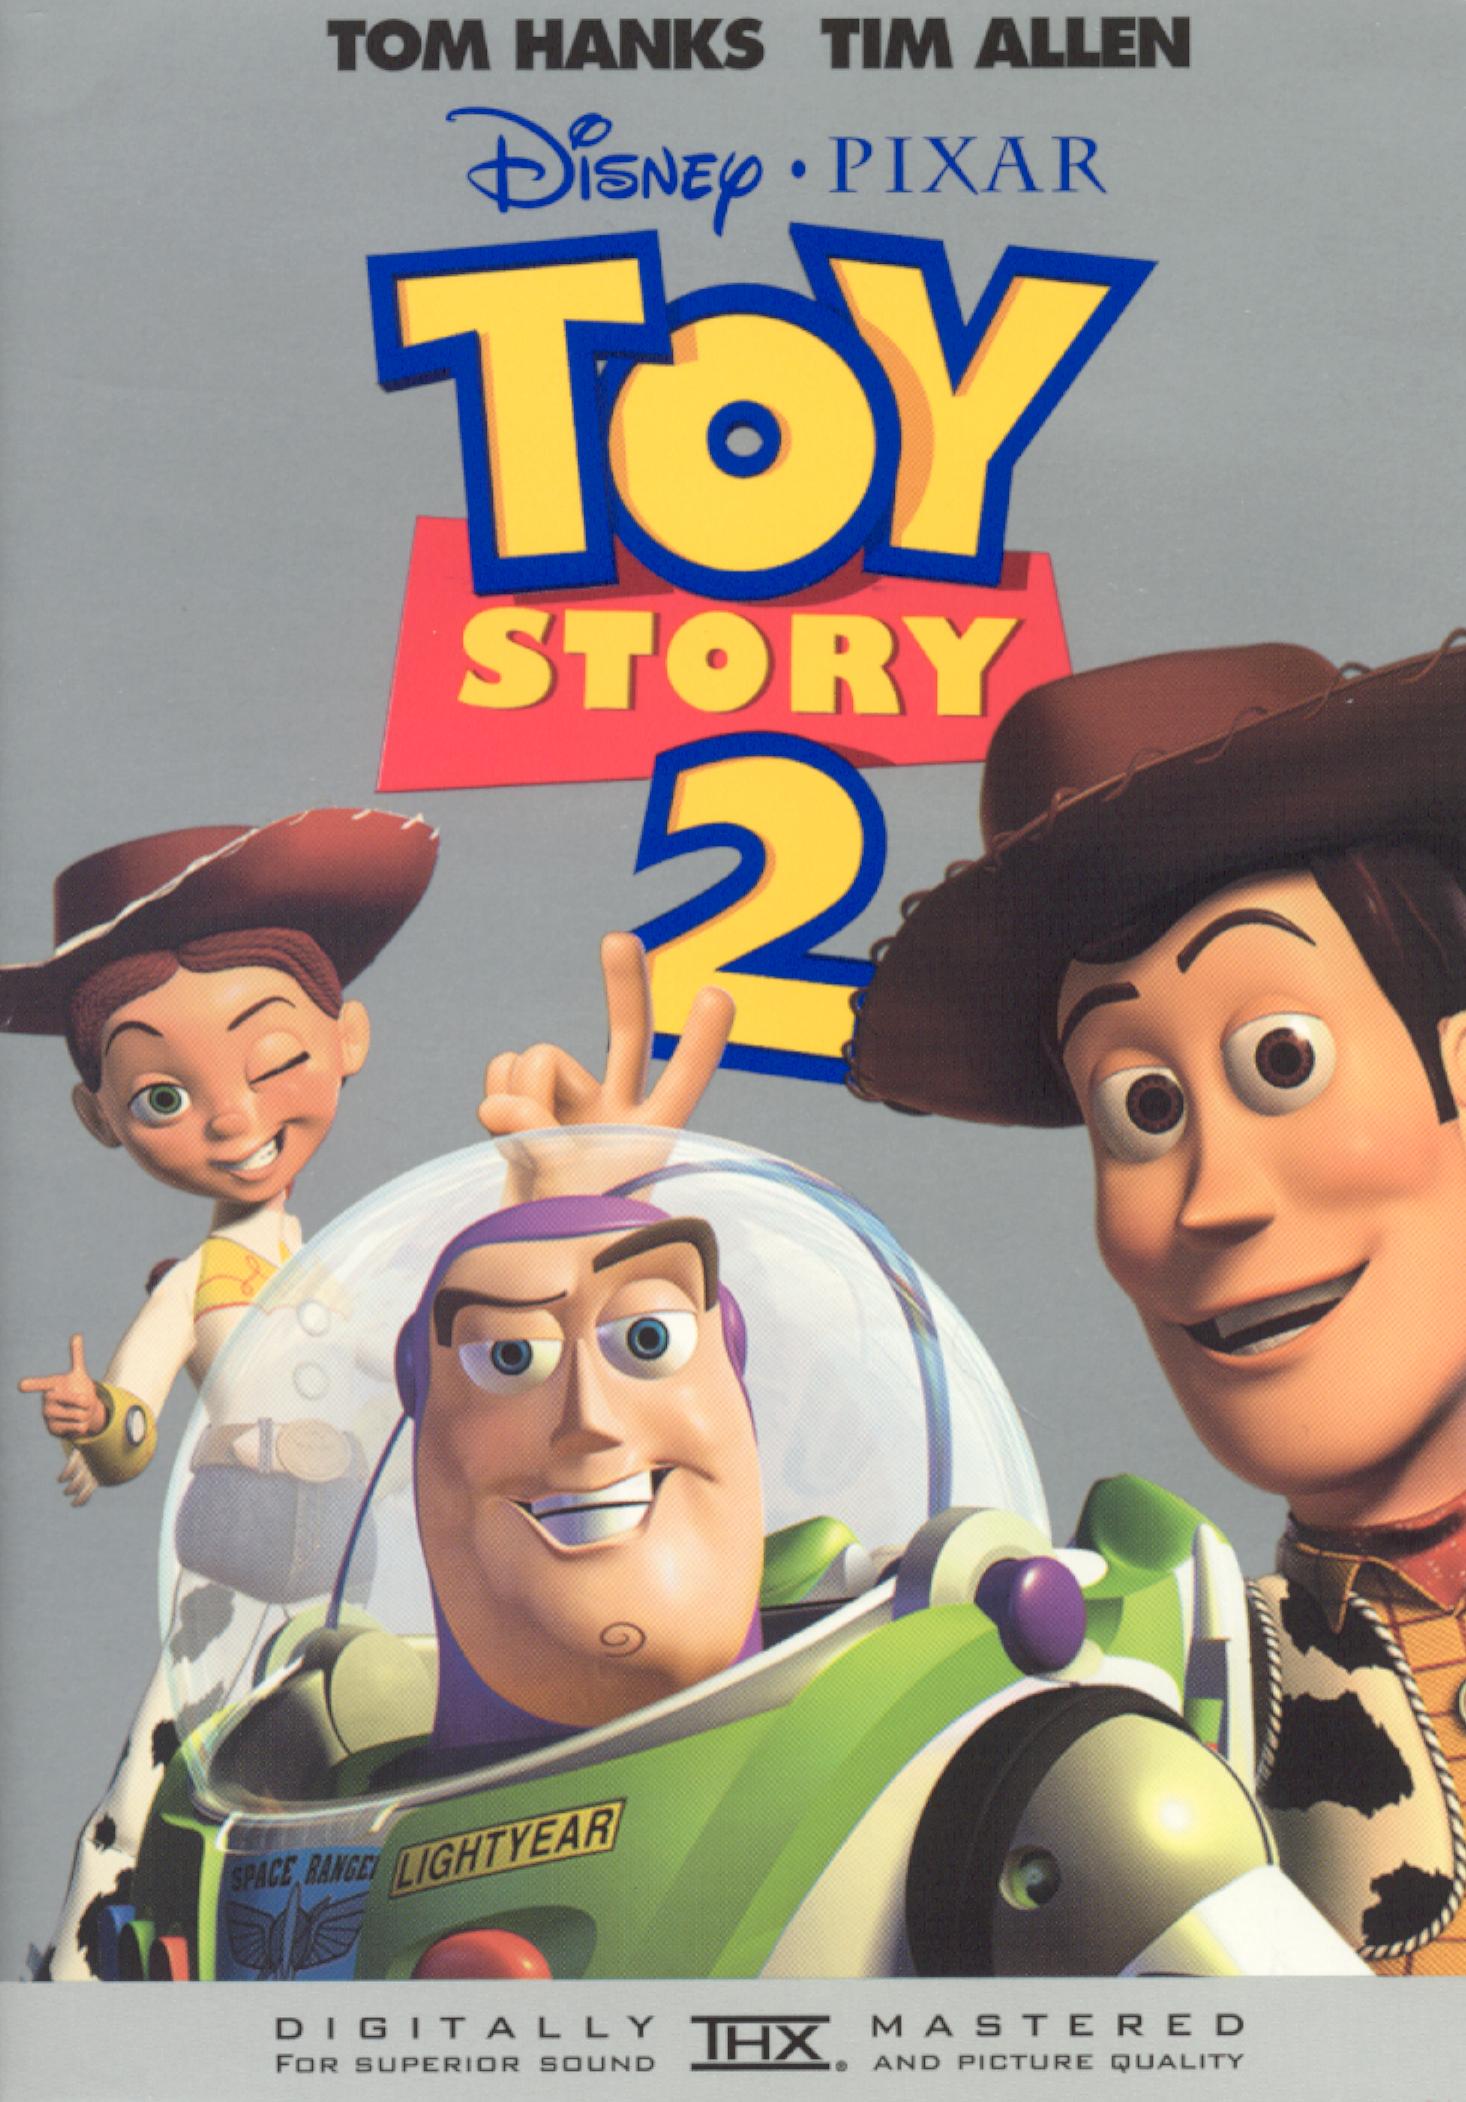 Toy Story 2 (1999) Disney movie